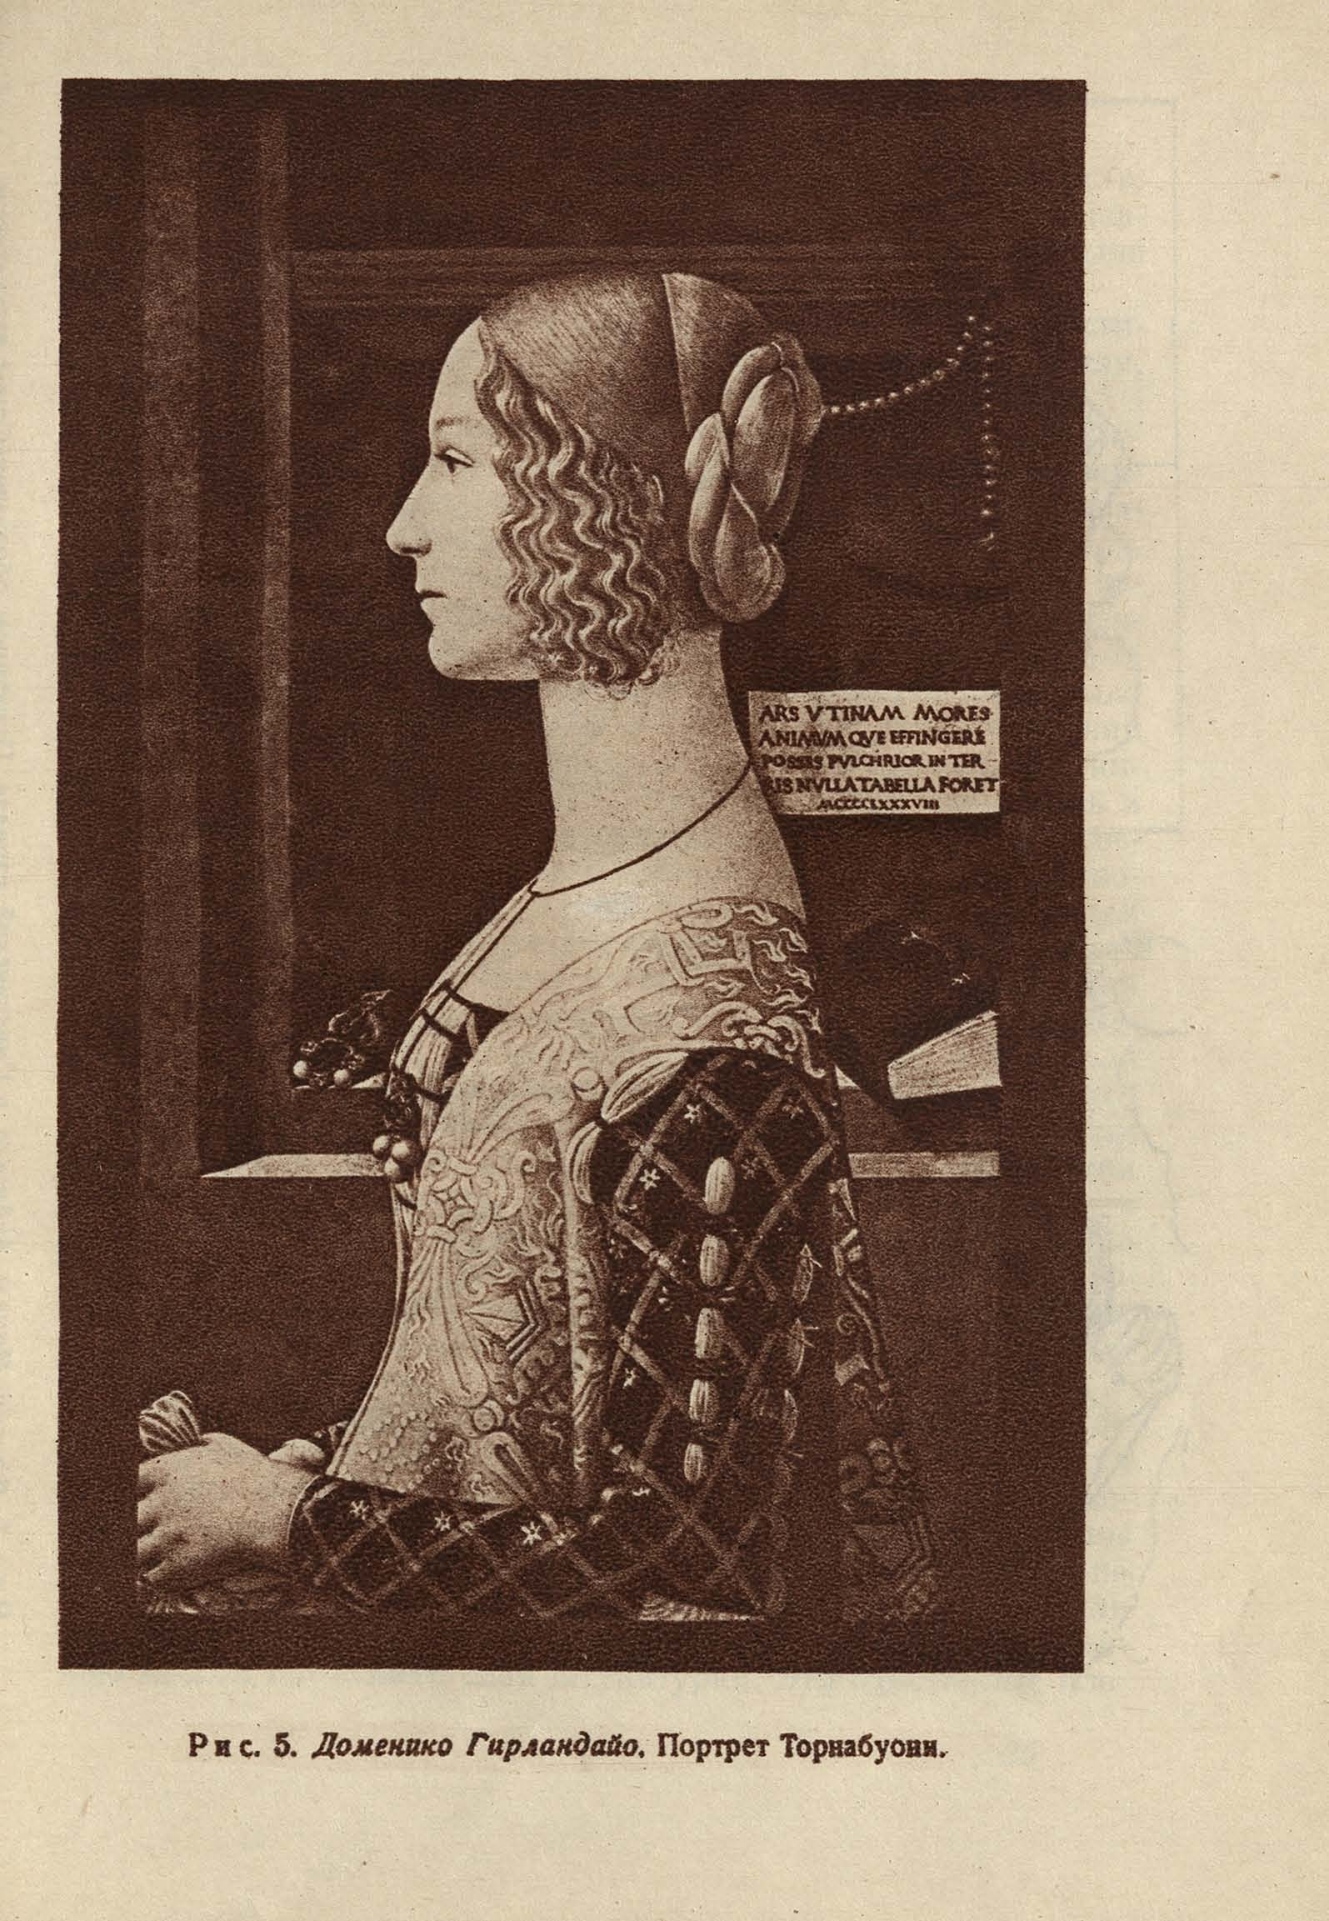 Доменико Гирландайо. Портрет Торнабуони. Станковая работа Д. Гирландайо 1488 г.